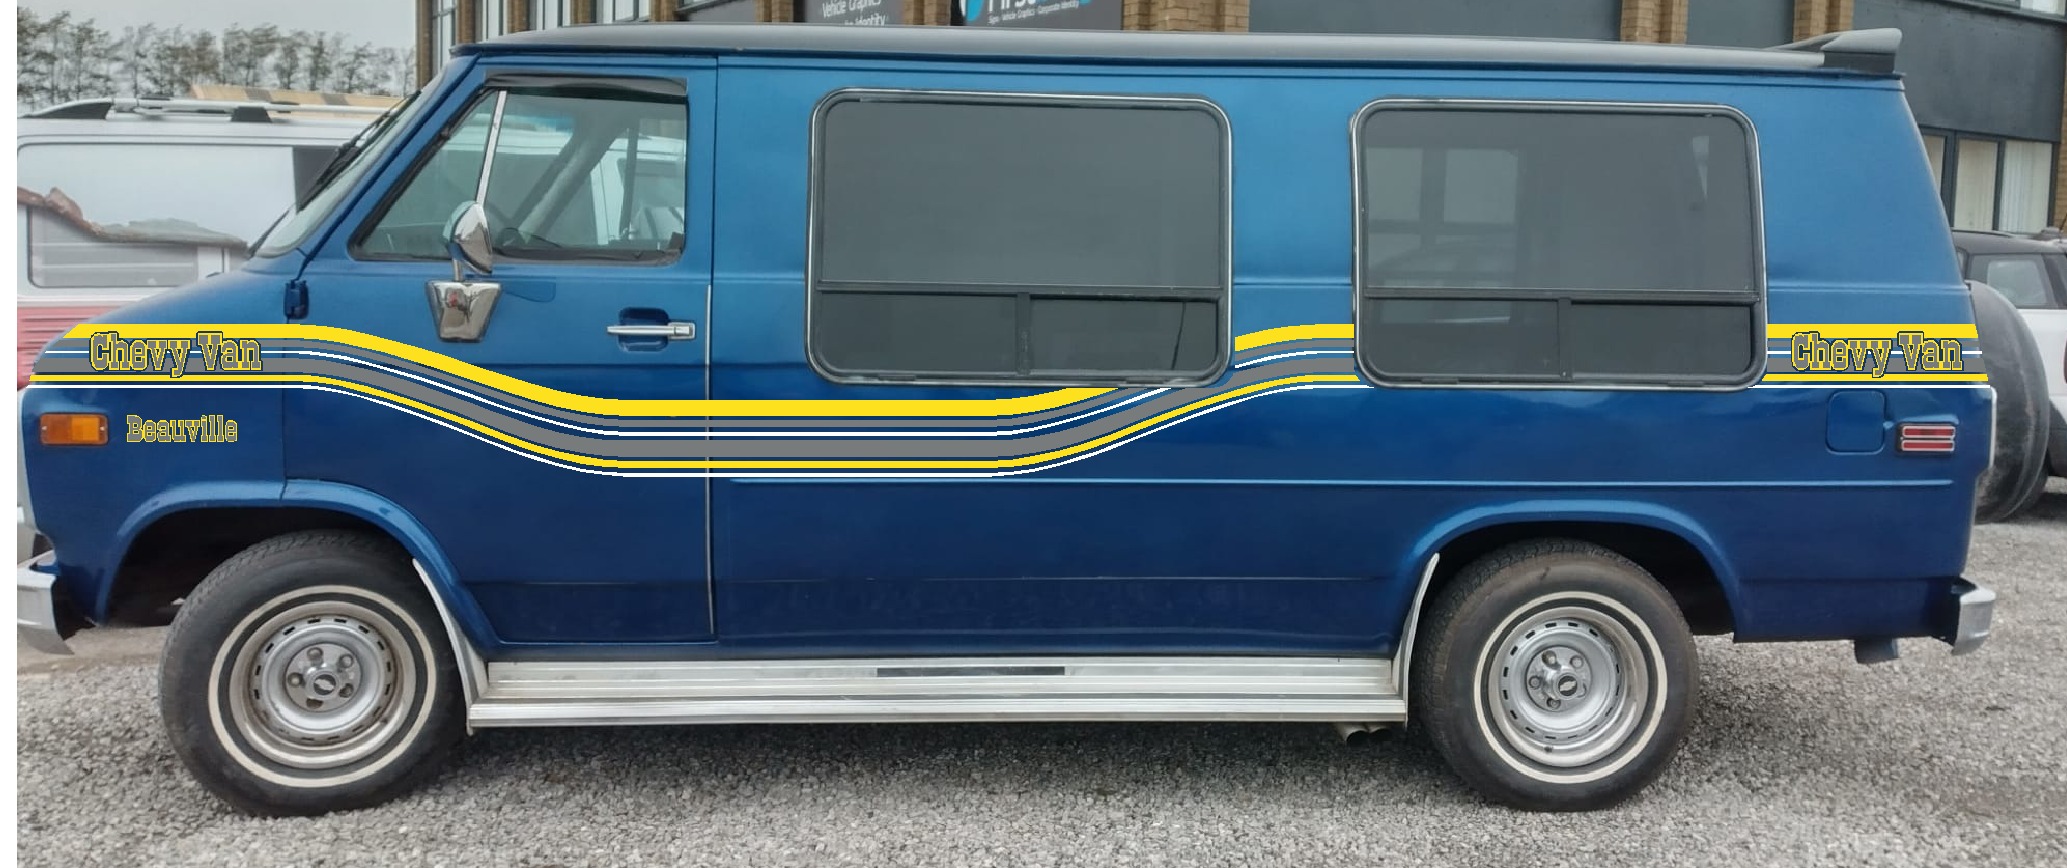 Chevy Van.jpg